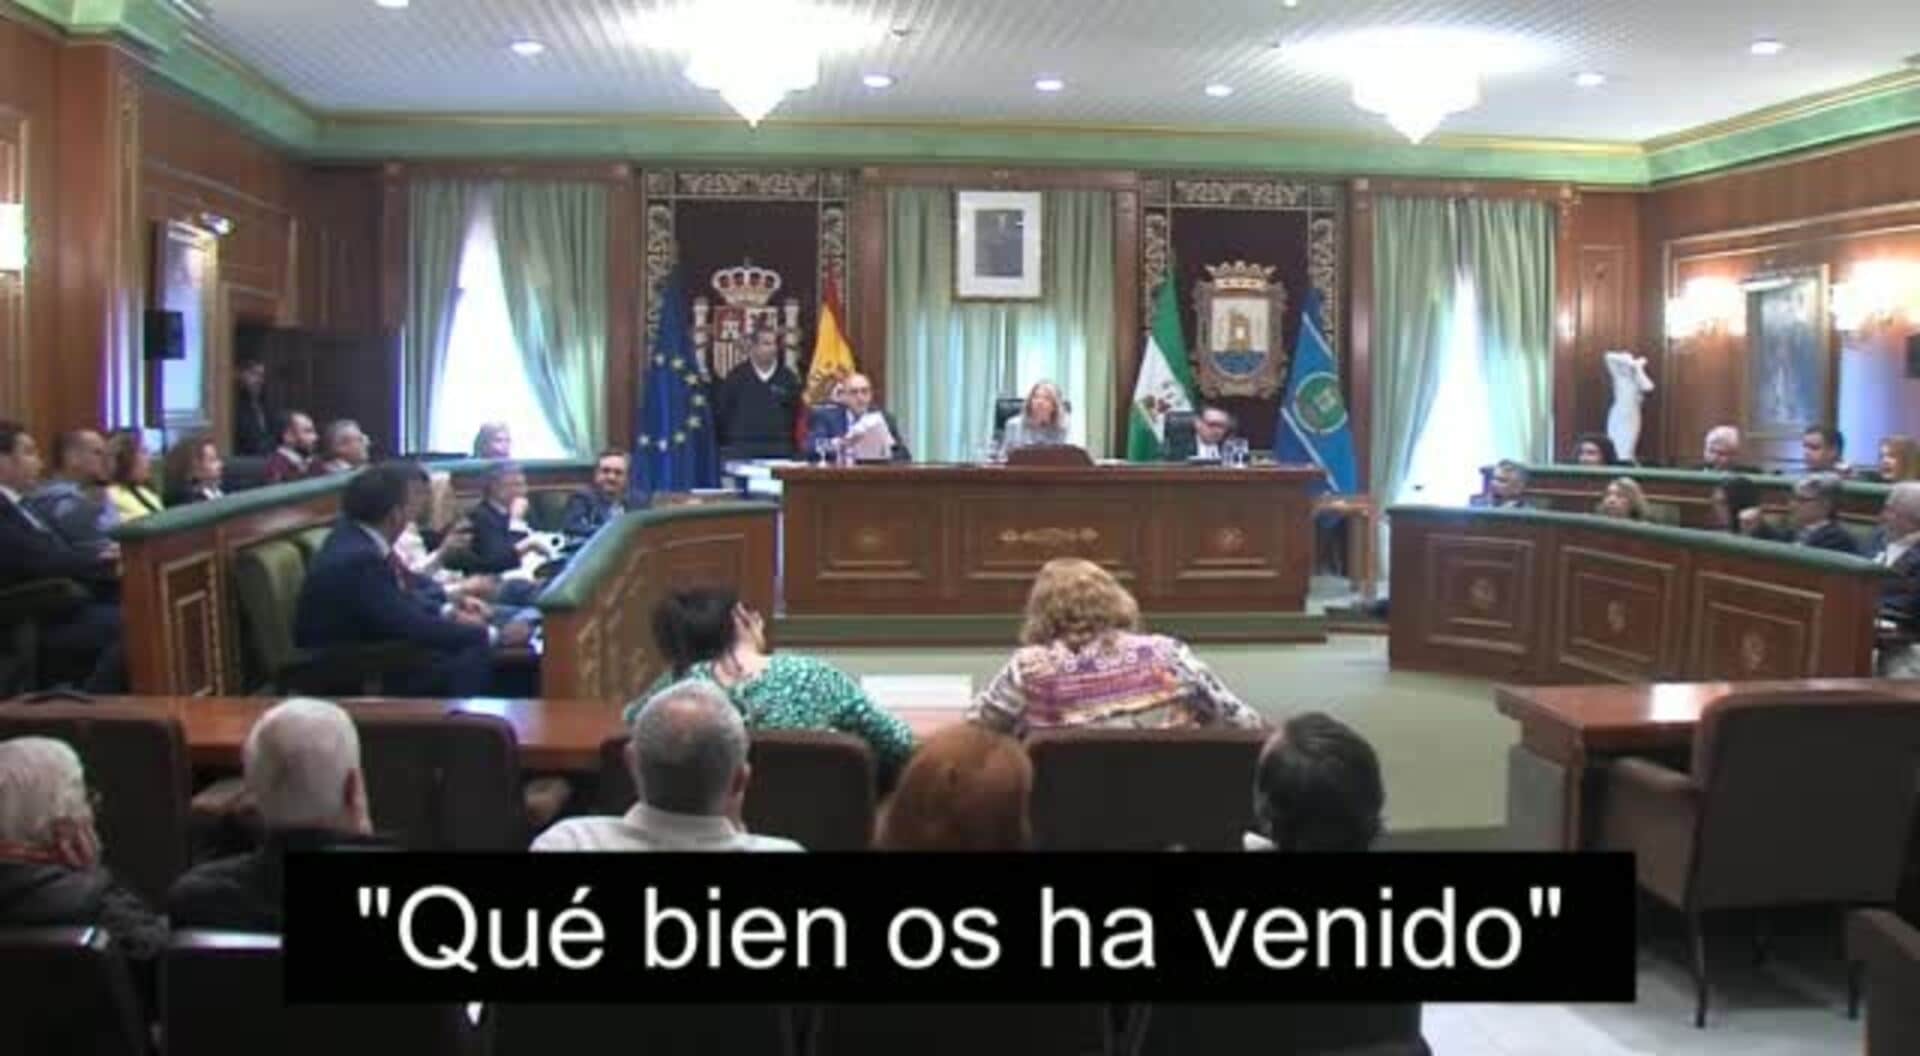 Momento en el que Pepe Bernal, del PSOE, dice en el pleno de Marbella: "Qué bien os ha venido"